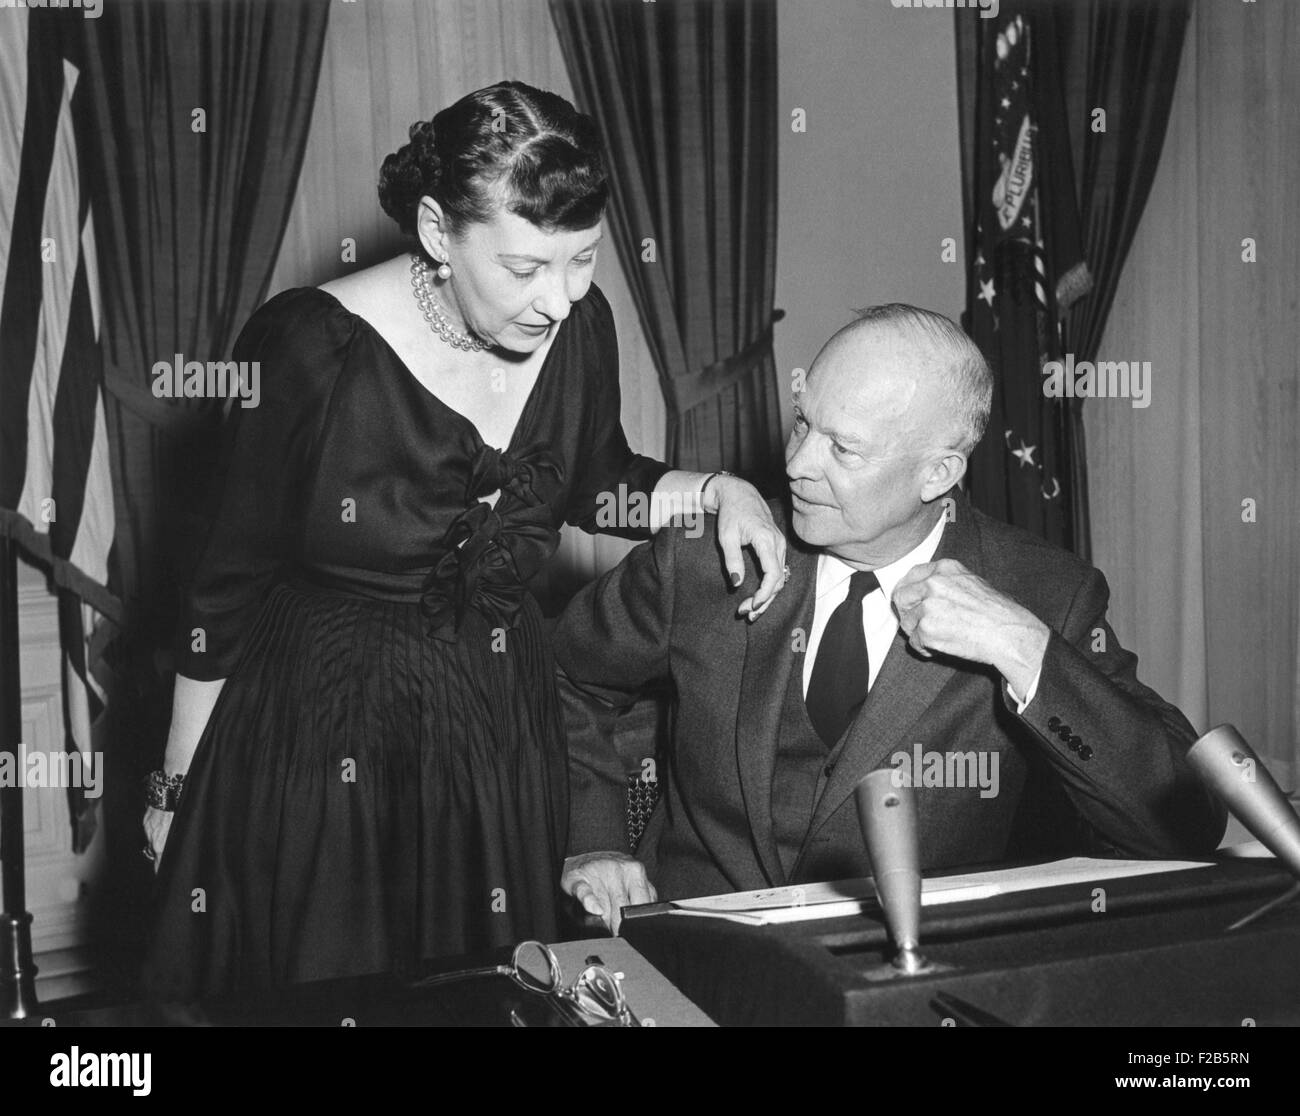 La First Lady Mamie Eisenhower colloqui con il presidente prima della sua Radio-TV indirizzo del febbraio 29, 1956. Cinque mesi dopo il suo attacco di cuore, egli annunciò che avrebbe dovuto correre per un secondo mandato alla presidenza. - (BSLOC 2014 16 73) Foto Stock